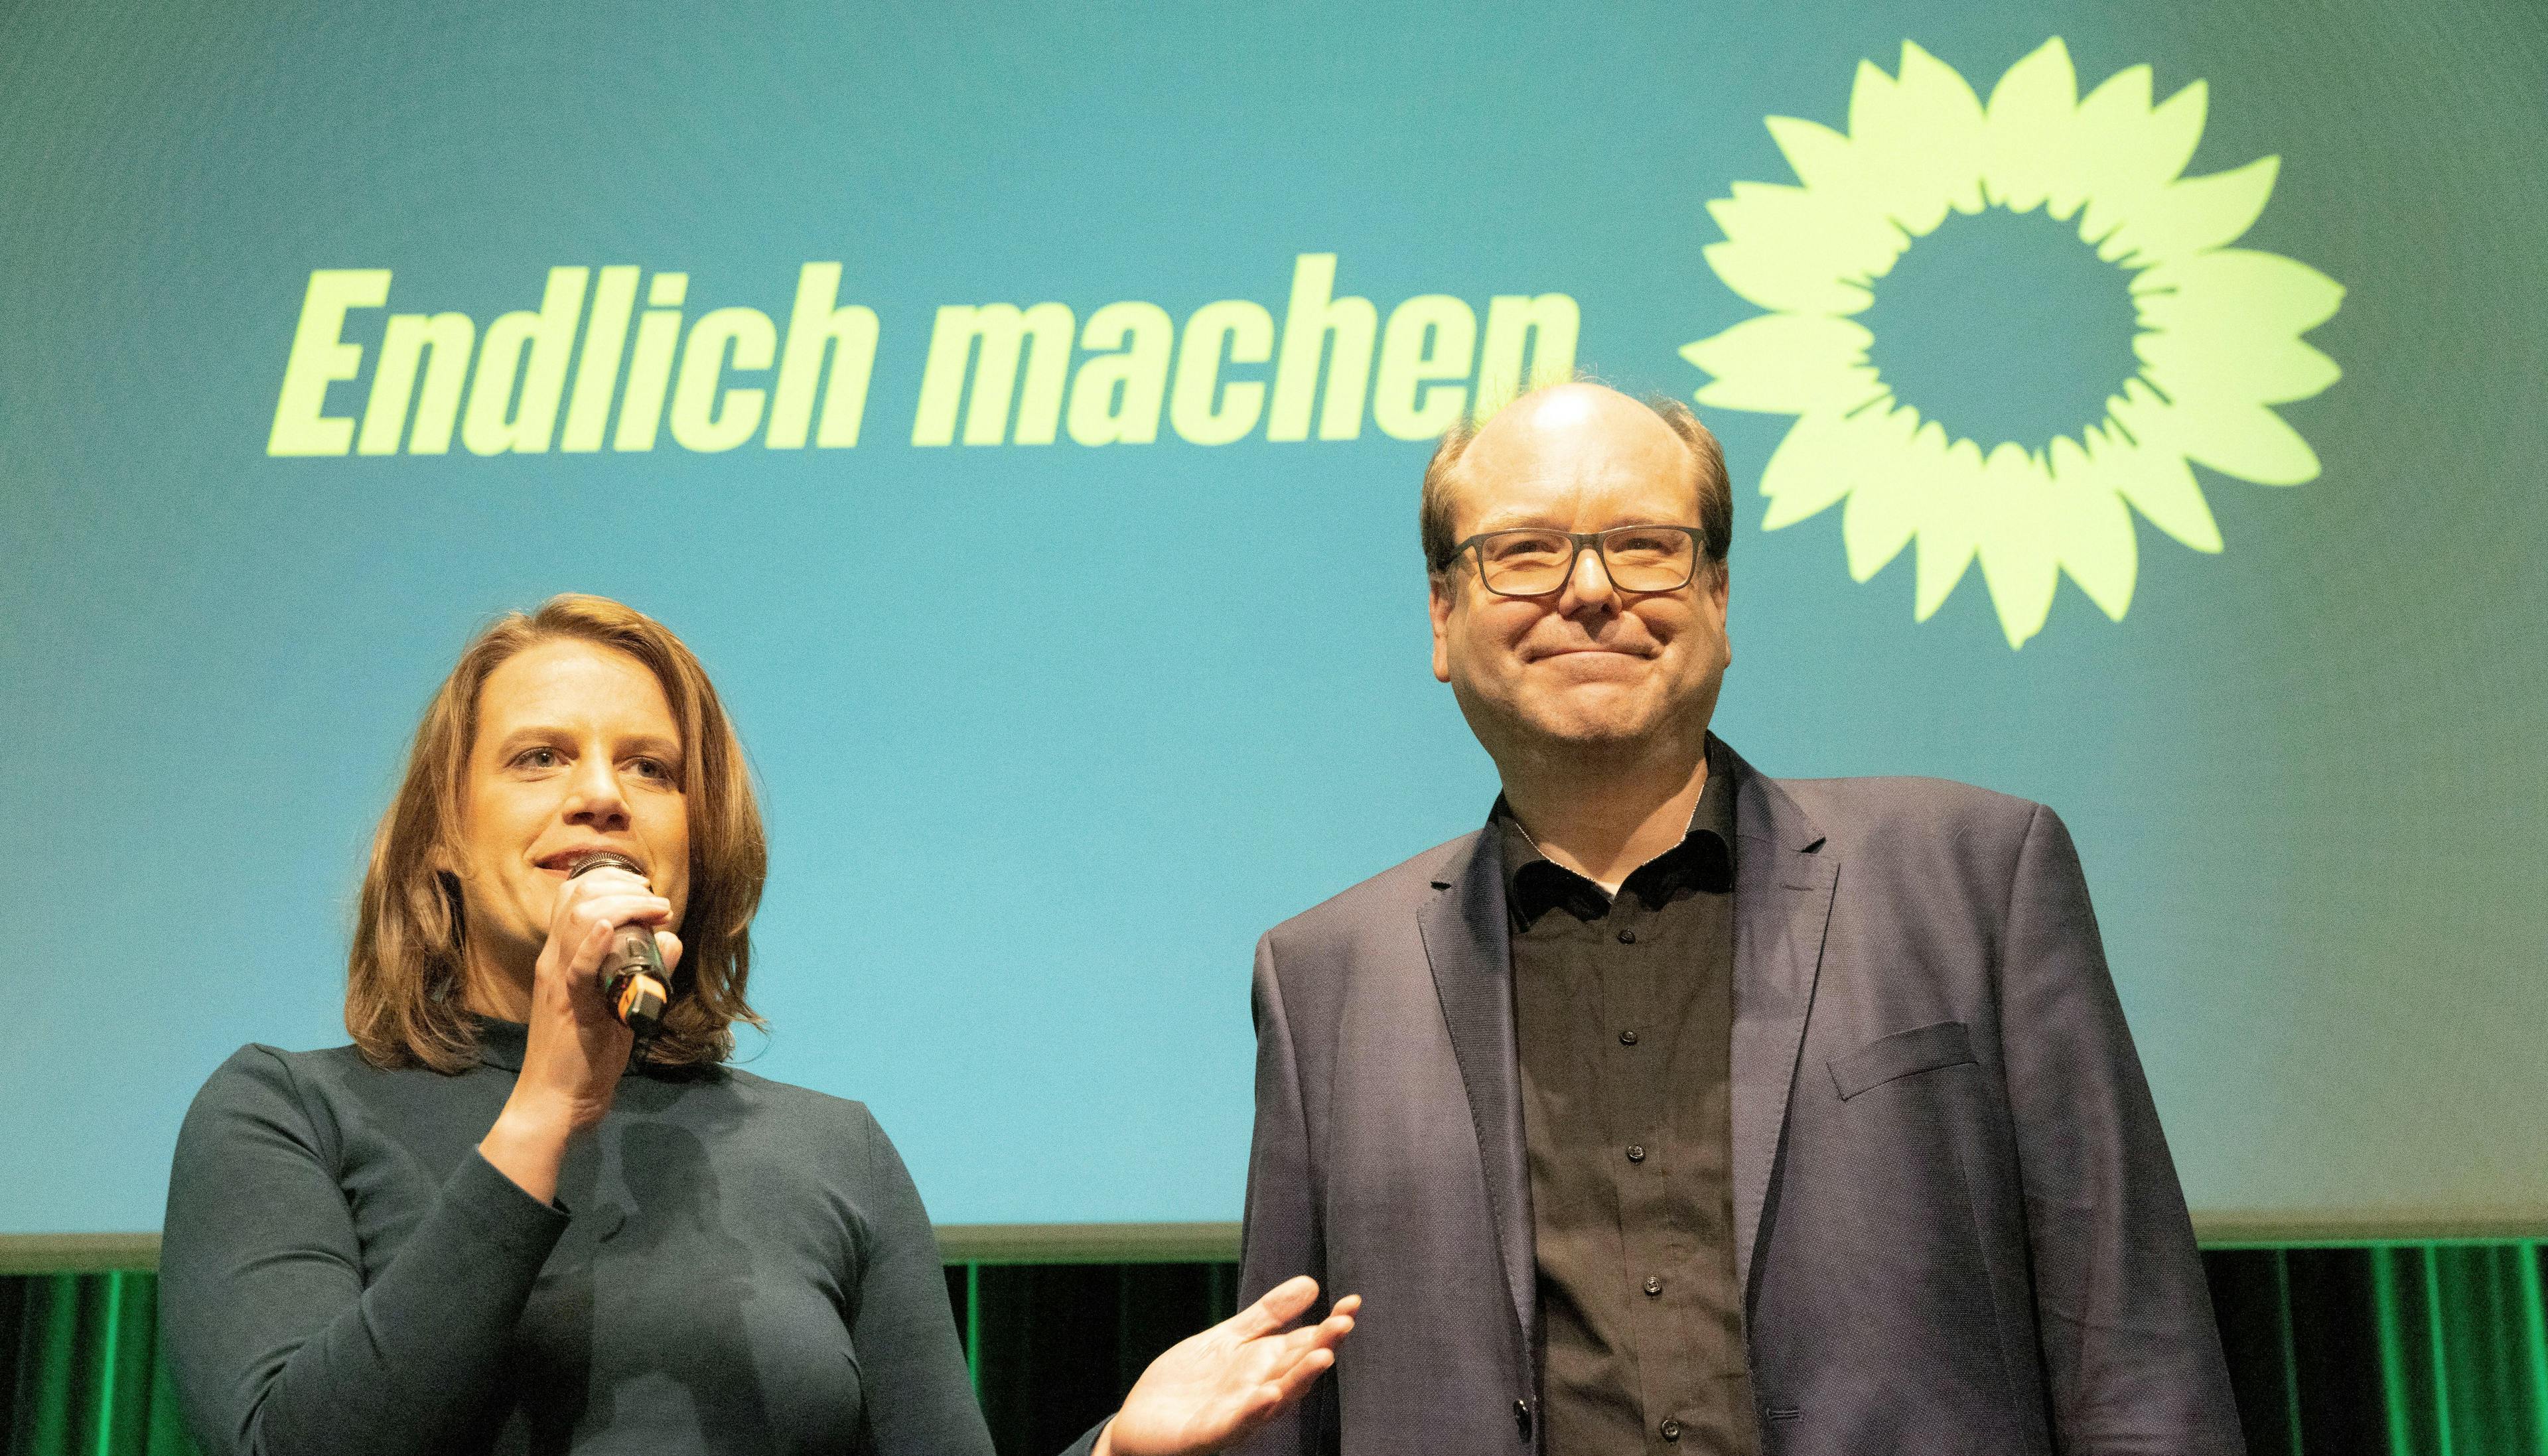 Das grüne Spitzenduo Julia Willie Hamburg und Christian Meyer steht vor einer Leinwand, auf der das Sonnenblumen-Logo abgebildet ist und in gelber Schrift steht: "Endlich machen". Julia Willie Hamburg spricht in ein Mikrofon.